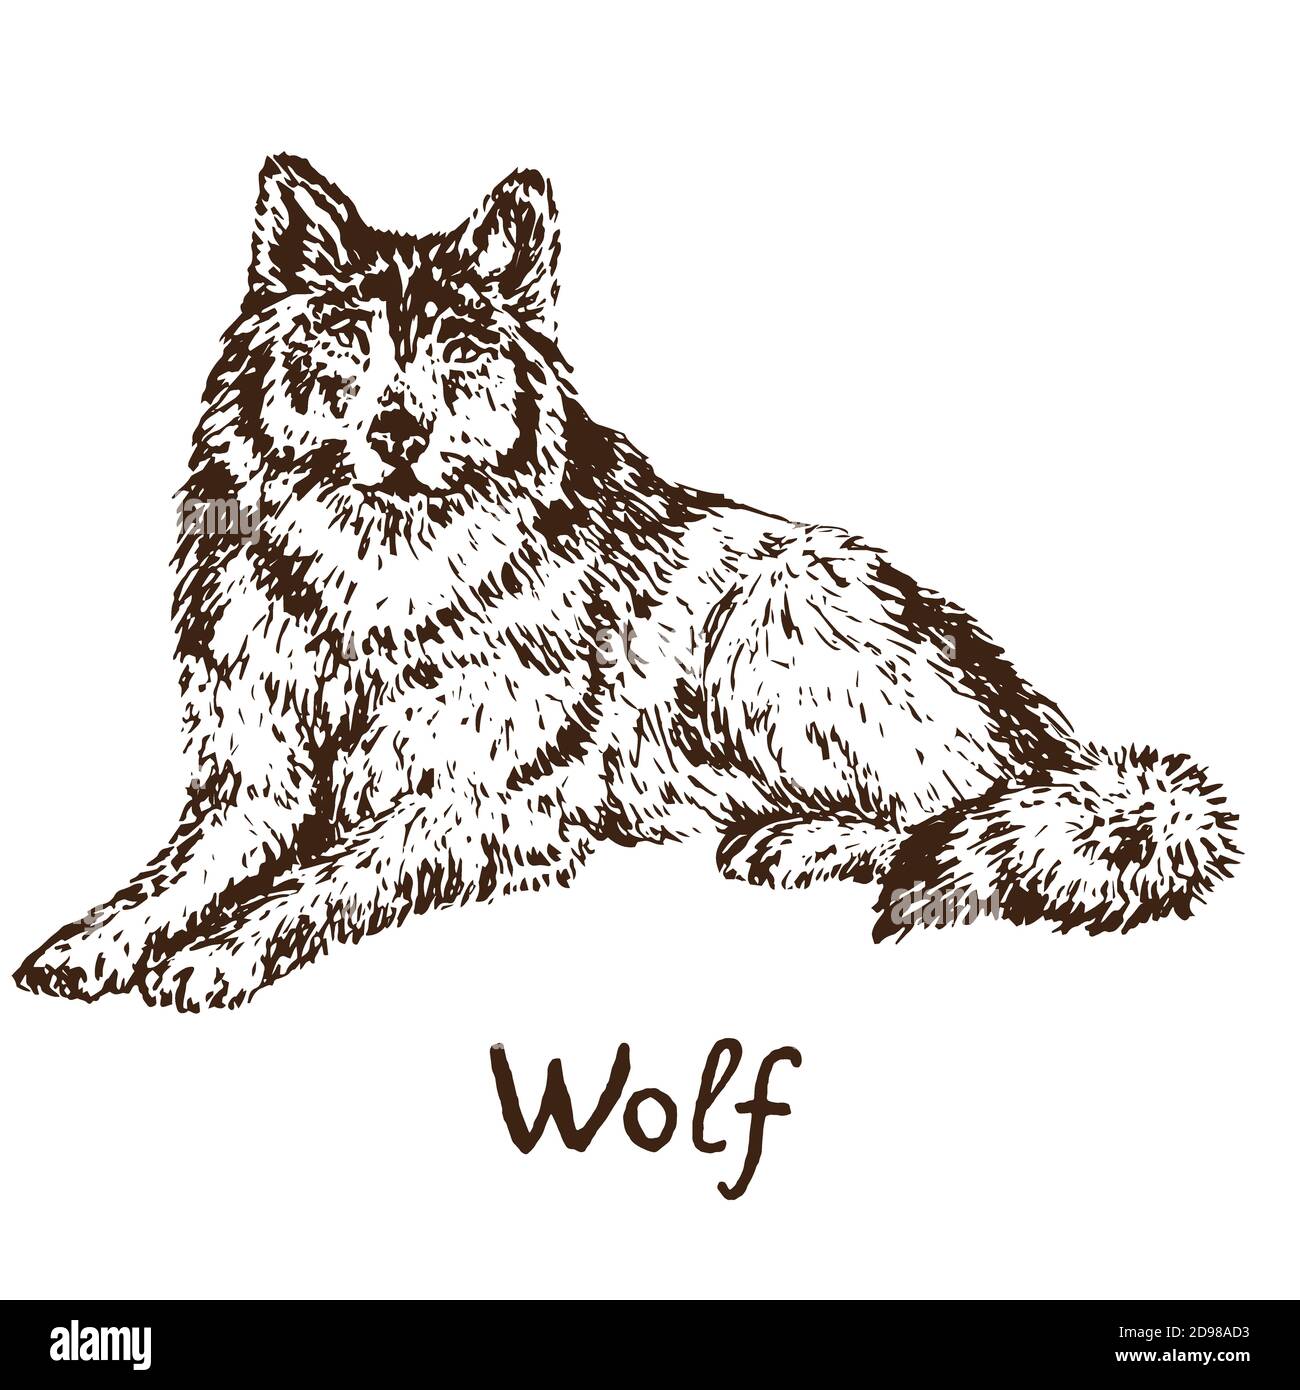 Loup gris (loup en bois ou loup occidental), esquisse simple dessin de caniche avec inscription, style de gravure Banque D'Images